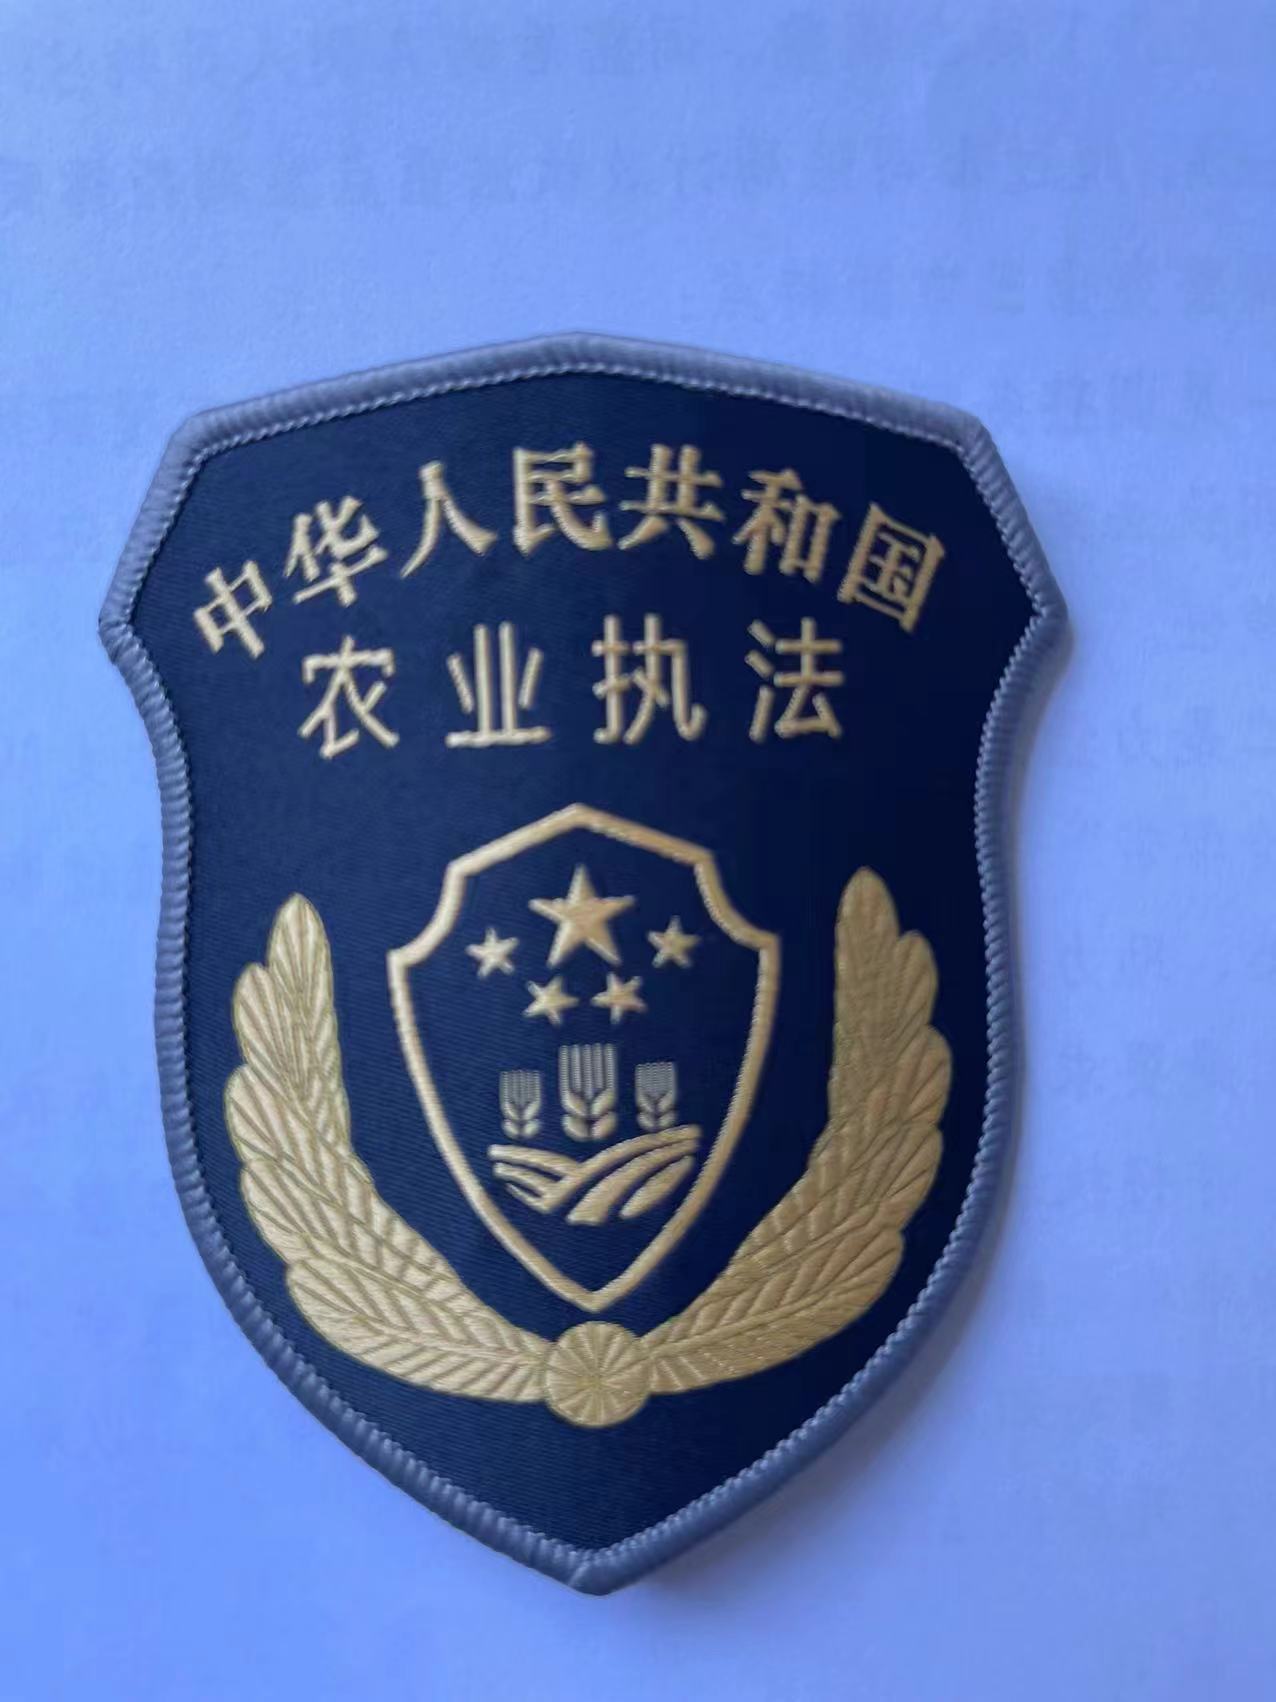 北京农业执法人员今起新装亮相臂章图案突出三农元素